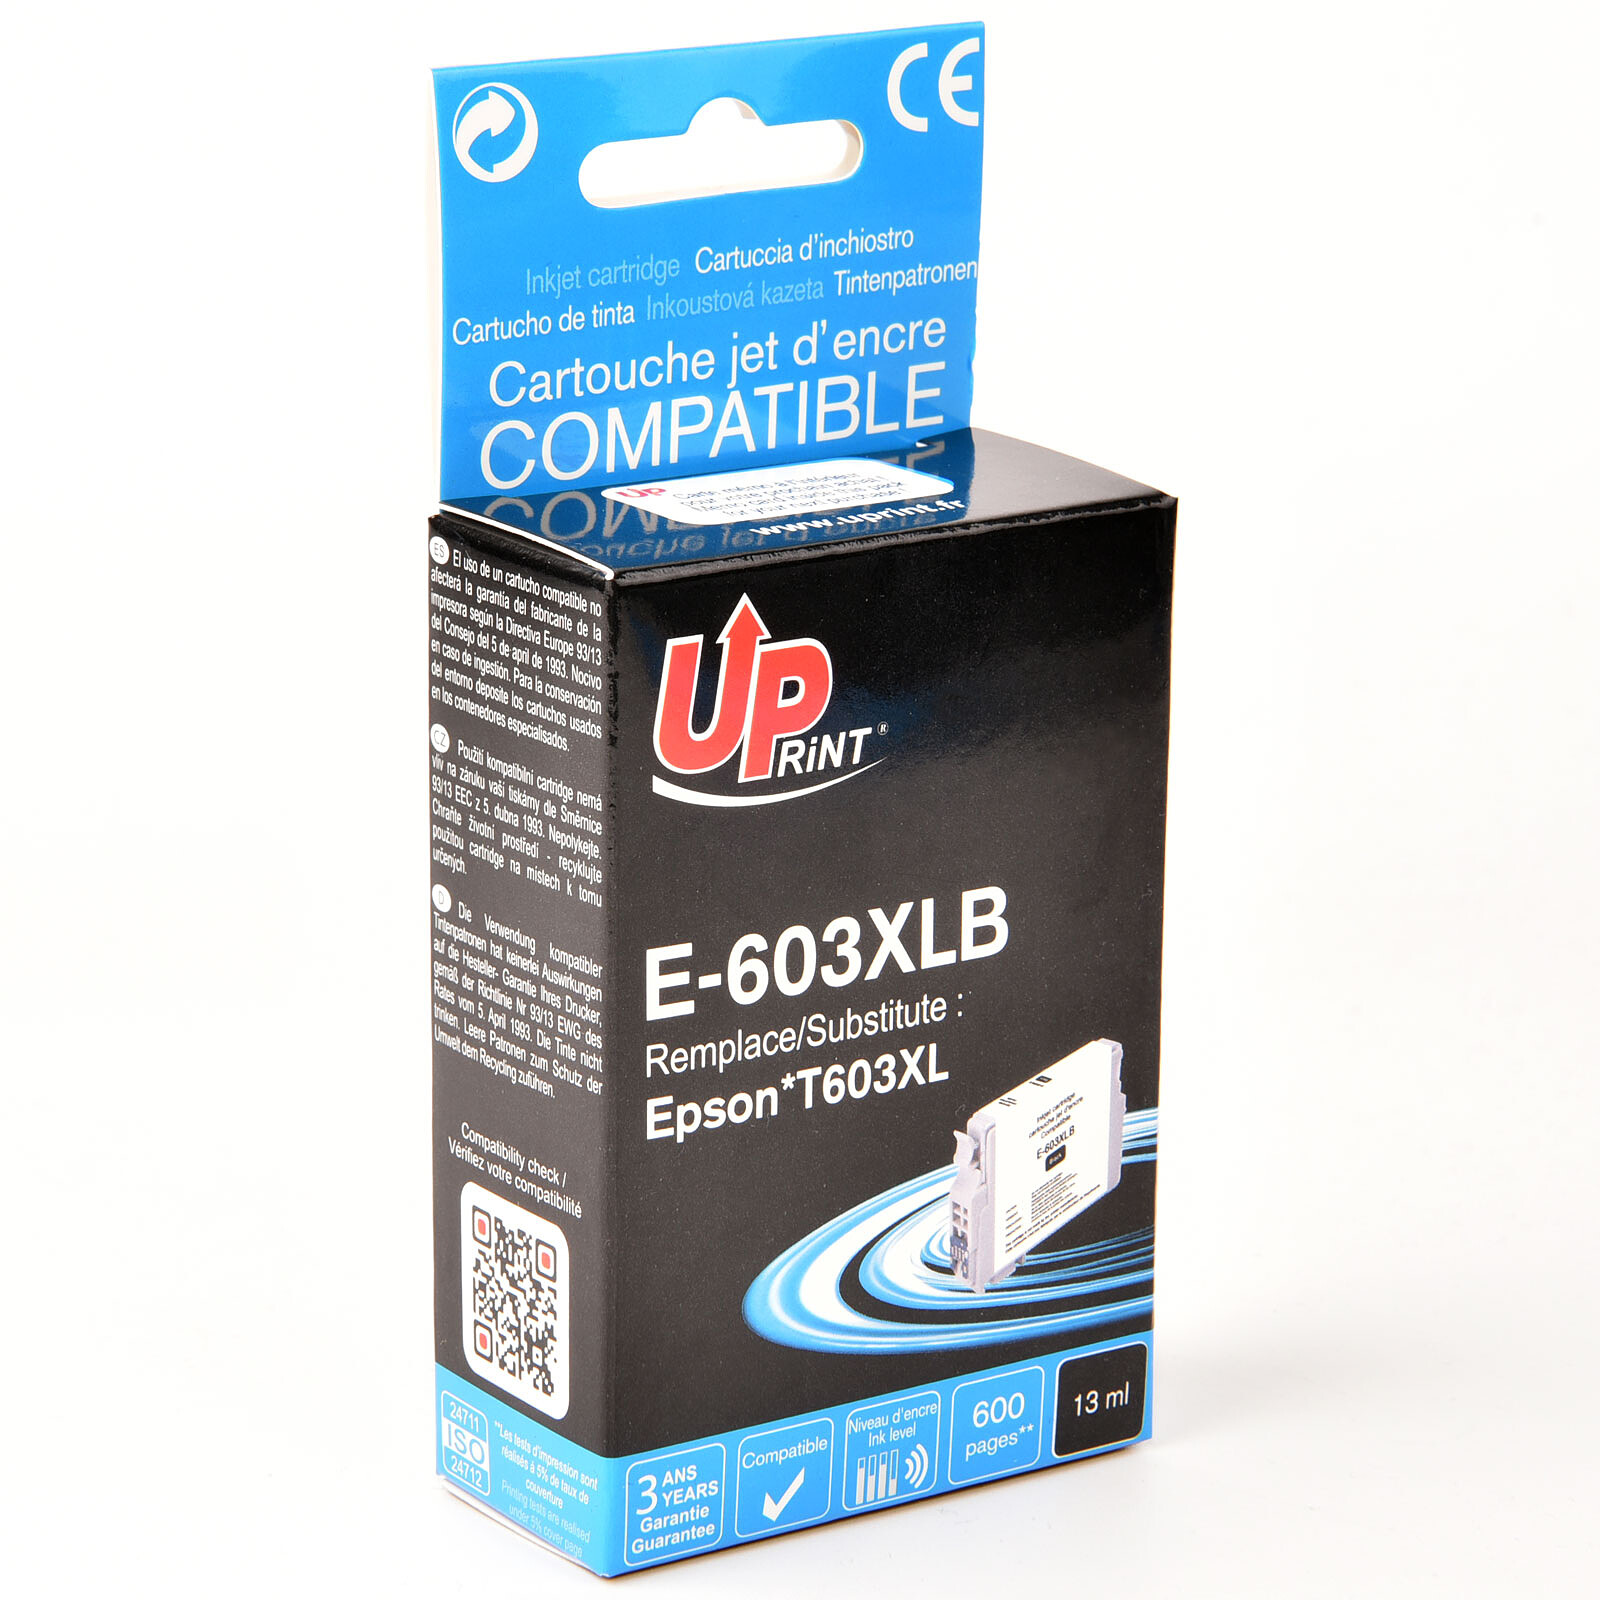 COMETE - 603XL - 6 Cartouches 603 XL compatibles Epson Expression Home -  Noir et Couleur - Marque française - Cartouche imprimante - LDLC